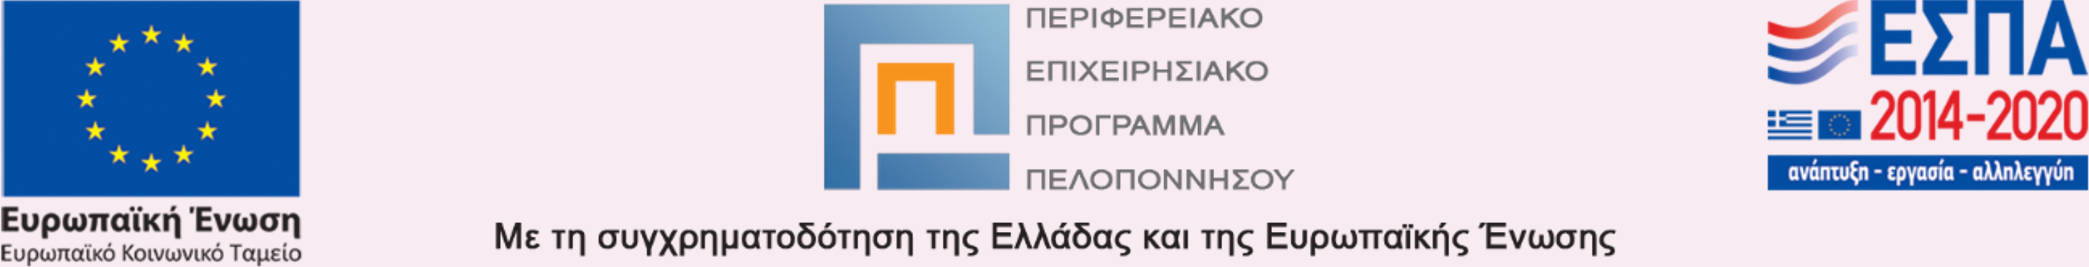 Το λογότυπο του ΕΣΠΑ